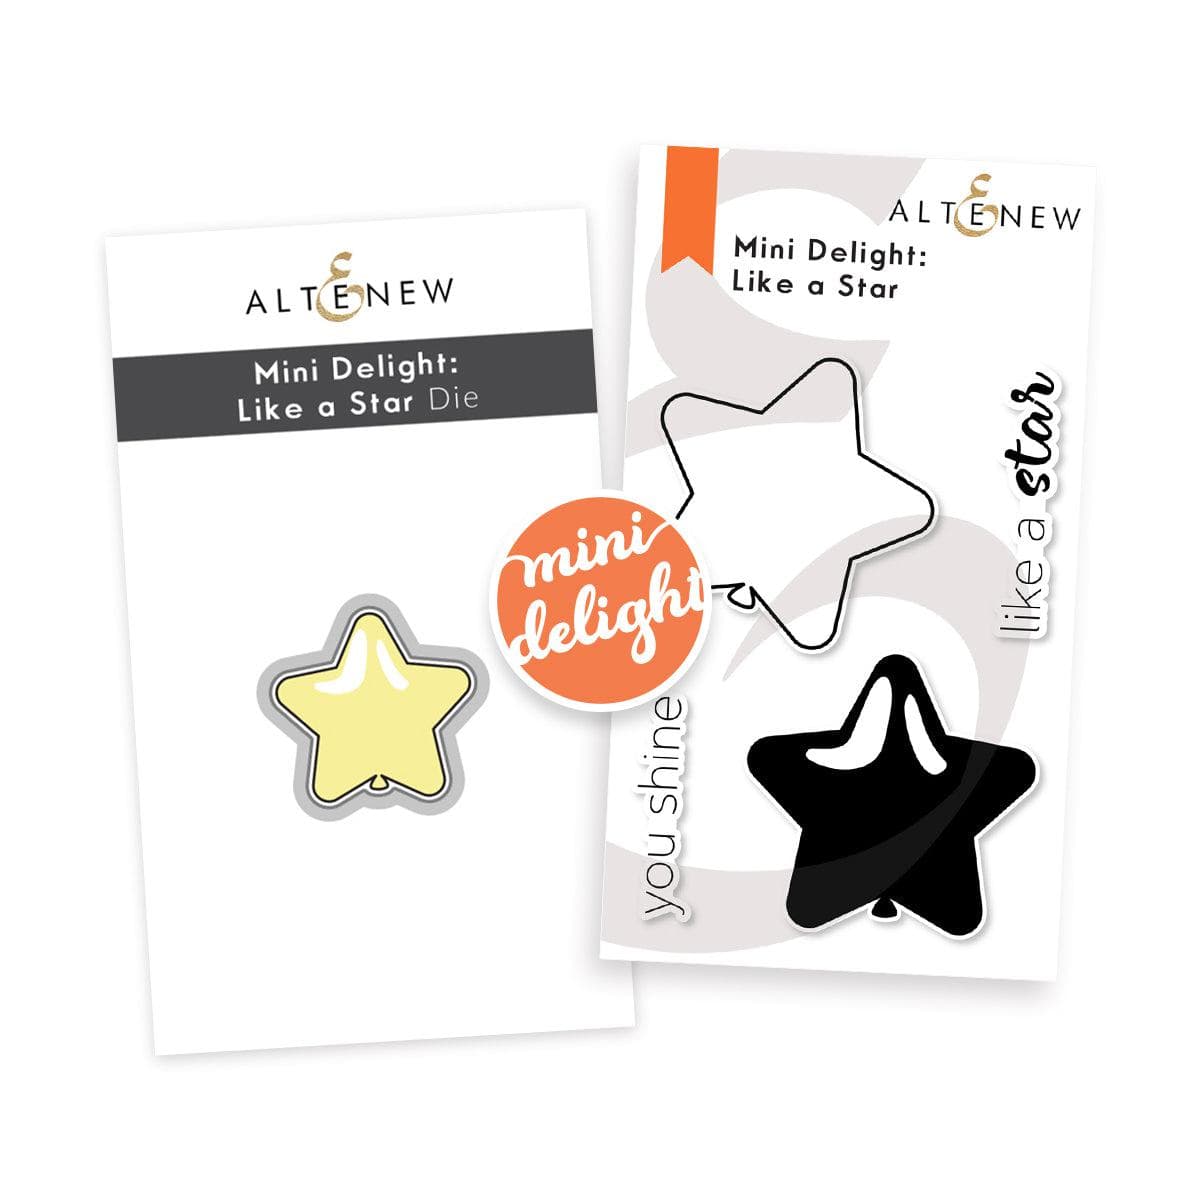 Altenew Mini Delight Mini Delight: Like a Star Stamp & Die Set